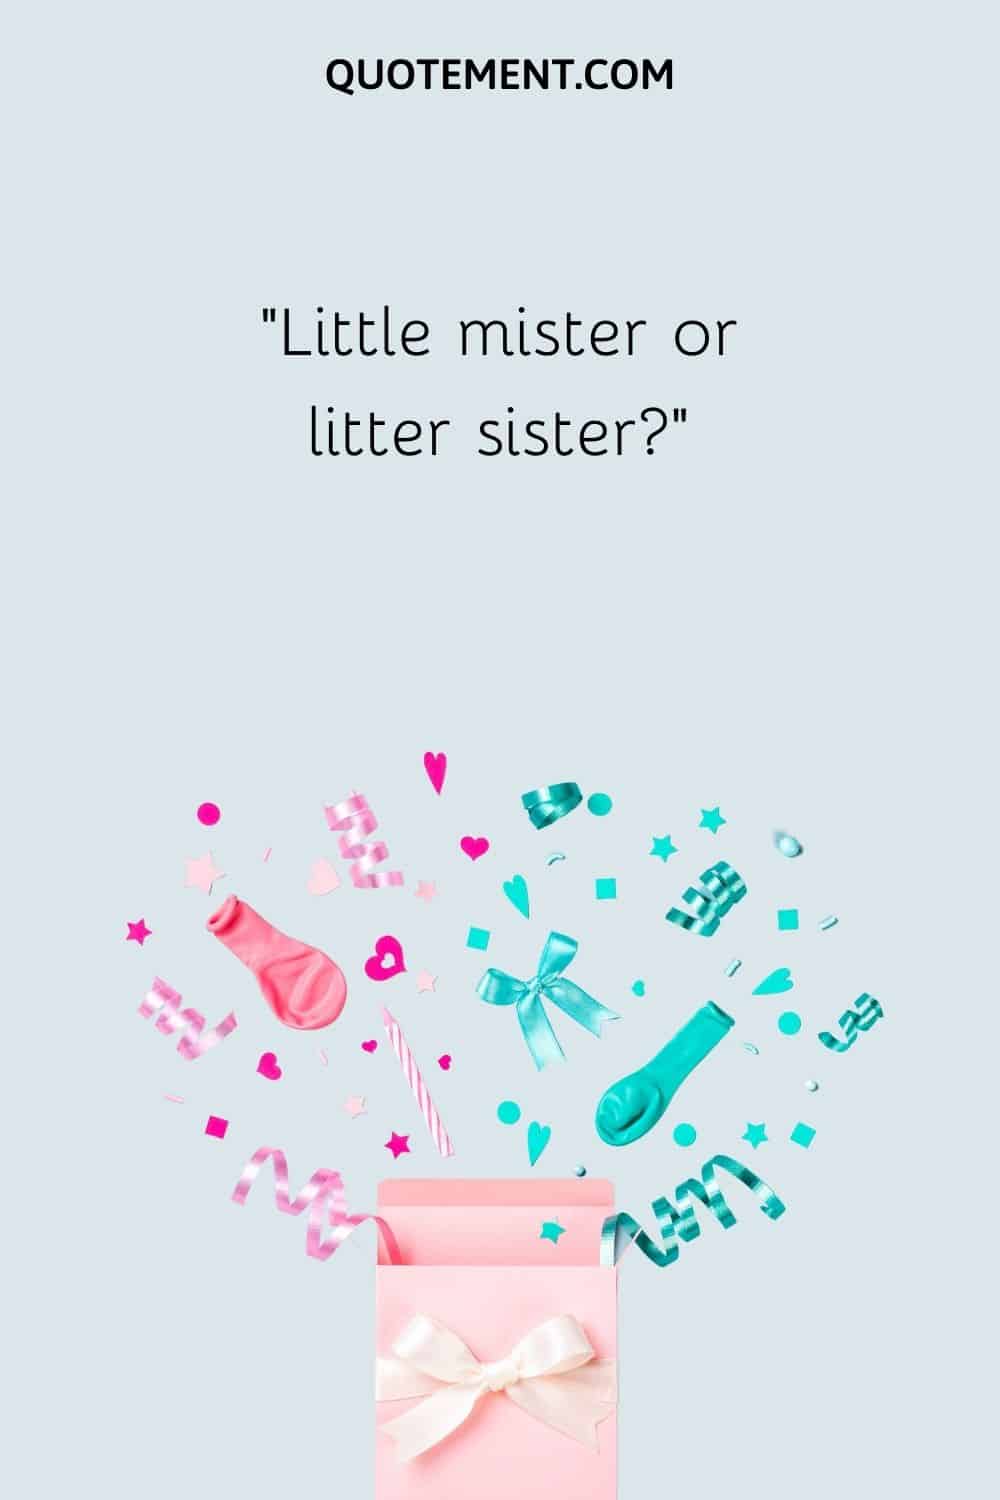 Little mister or litter sister